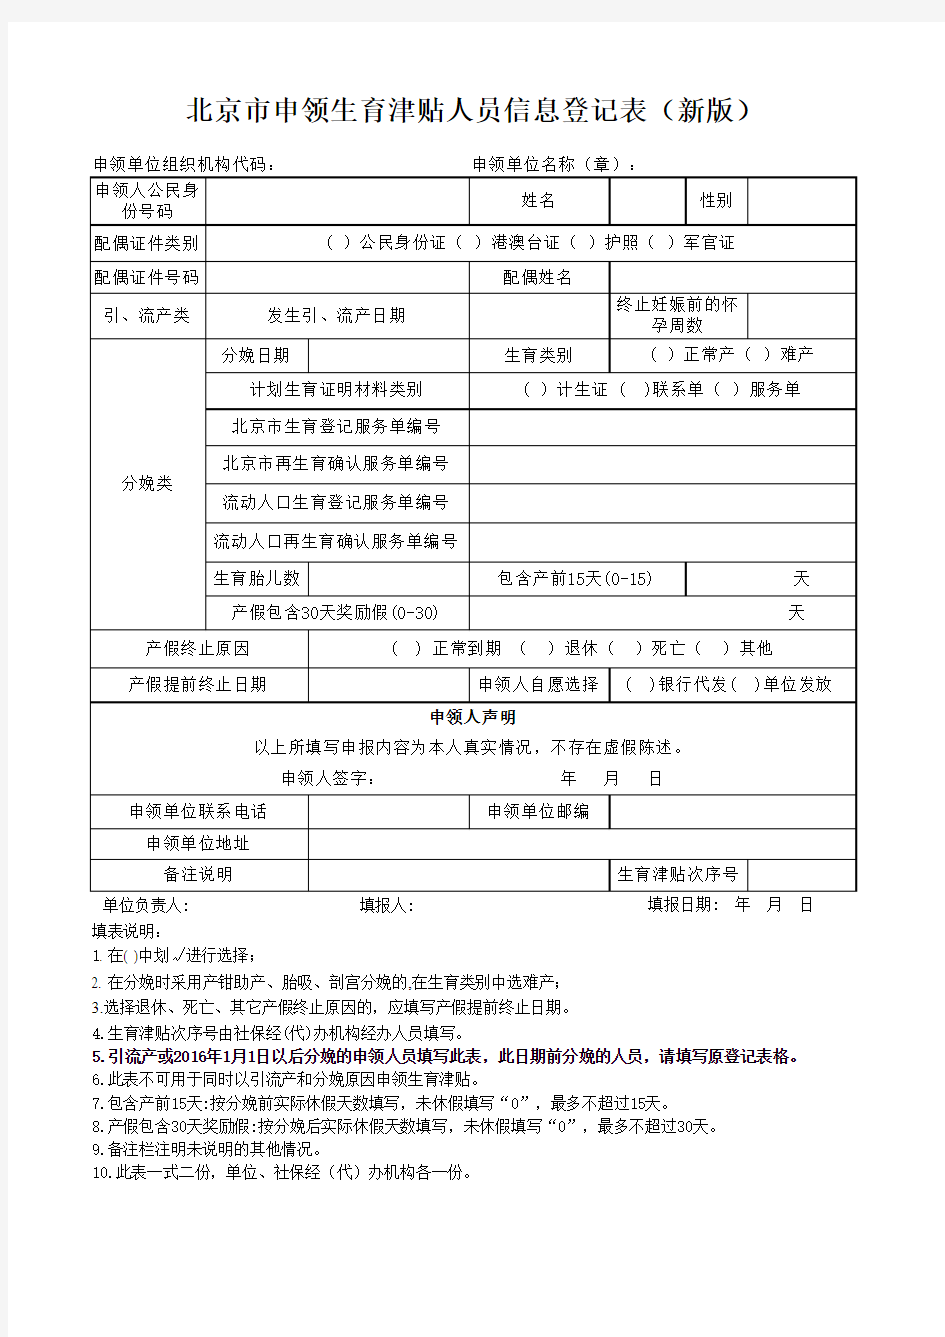 北京市申领生育津贴人员信息登记表(新版)